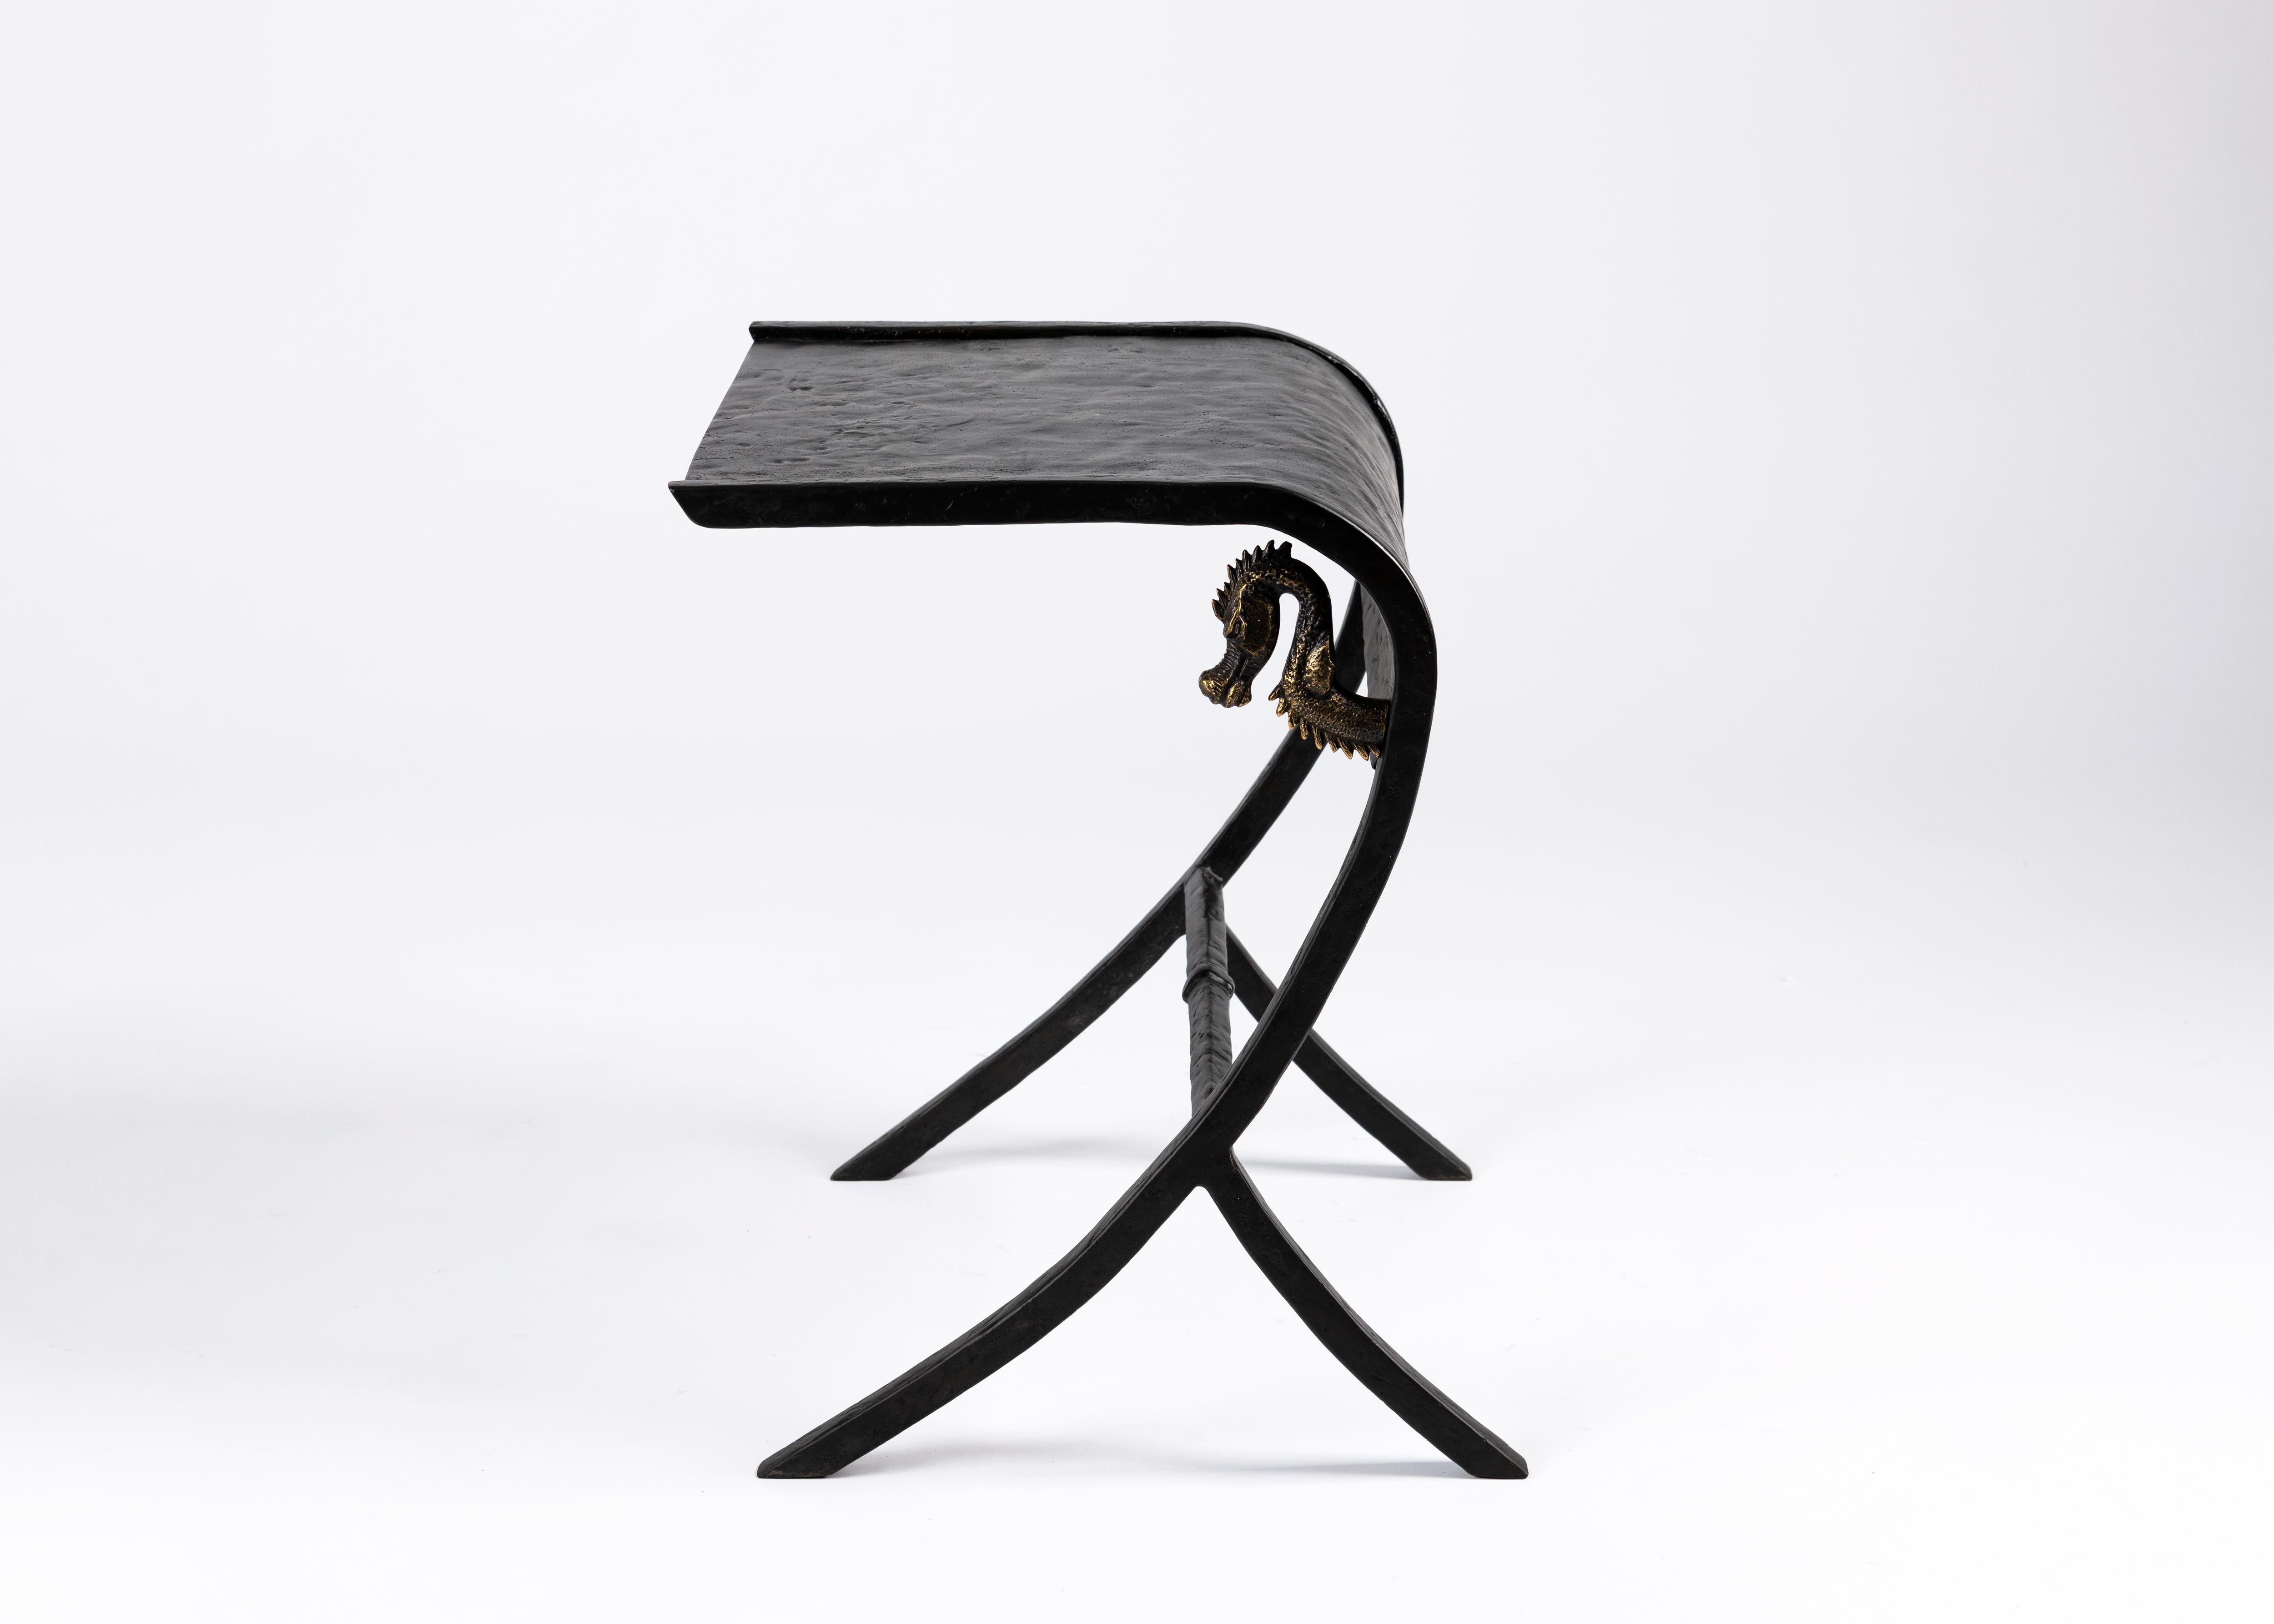 Deux bandes parallèles de bronze patiné se courbent sinueusement vers le sol et sont soutenues par l'arrière pour former le cadre d'une table d'appoint texturée qui peut facilement être placée à côté d'un canapé. La courbe intérieure est ornée de